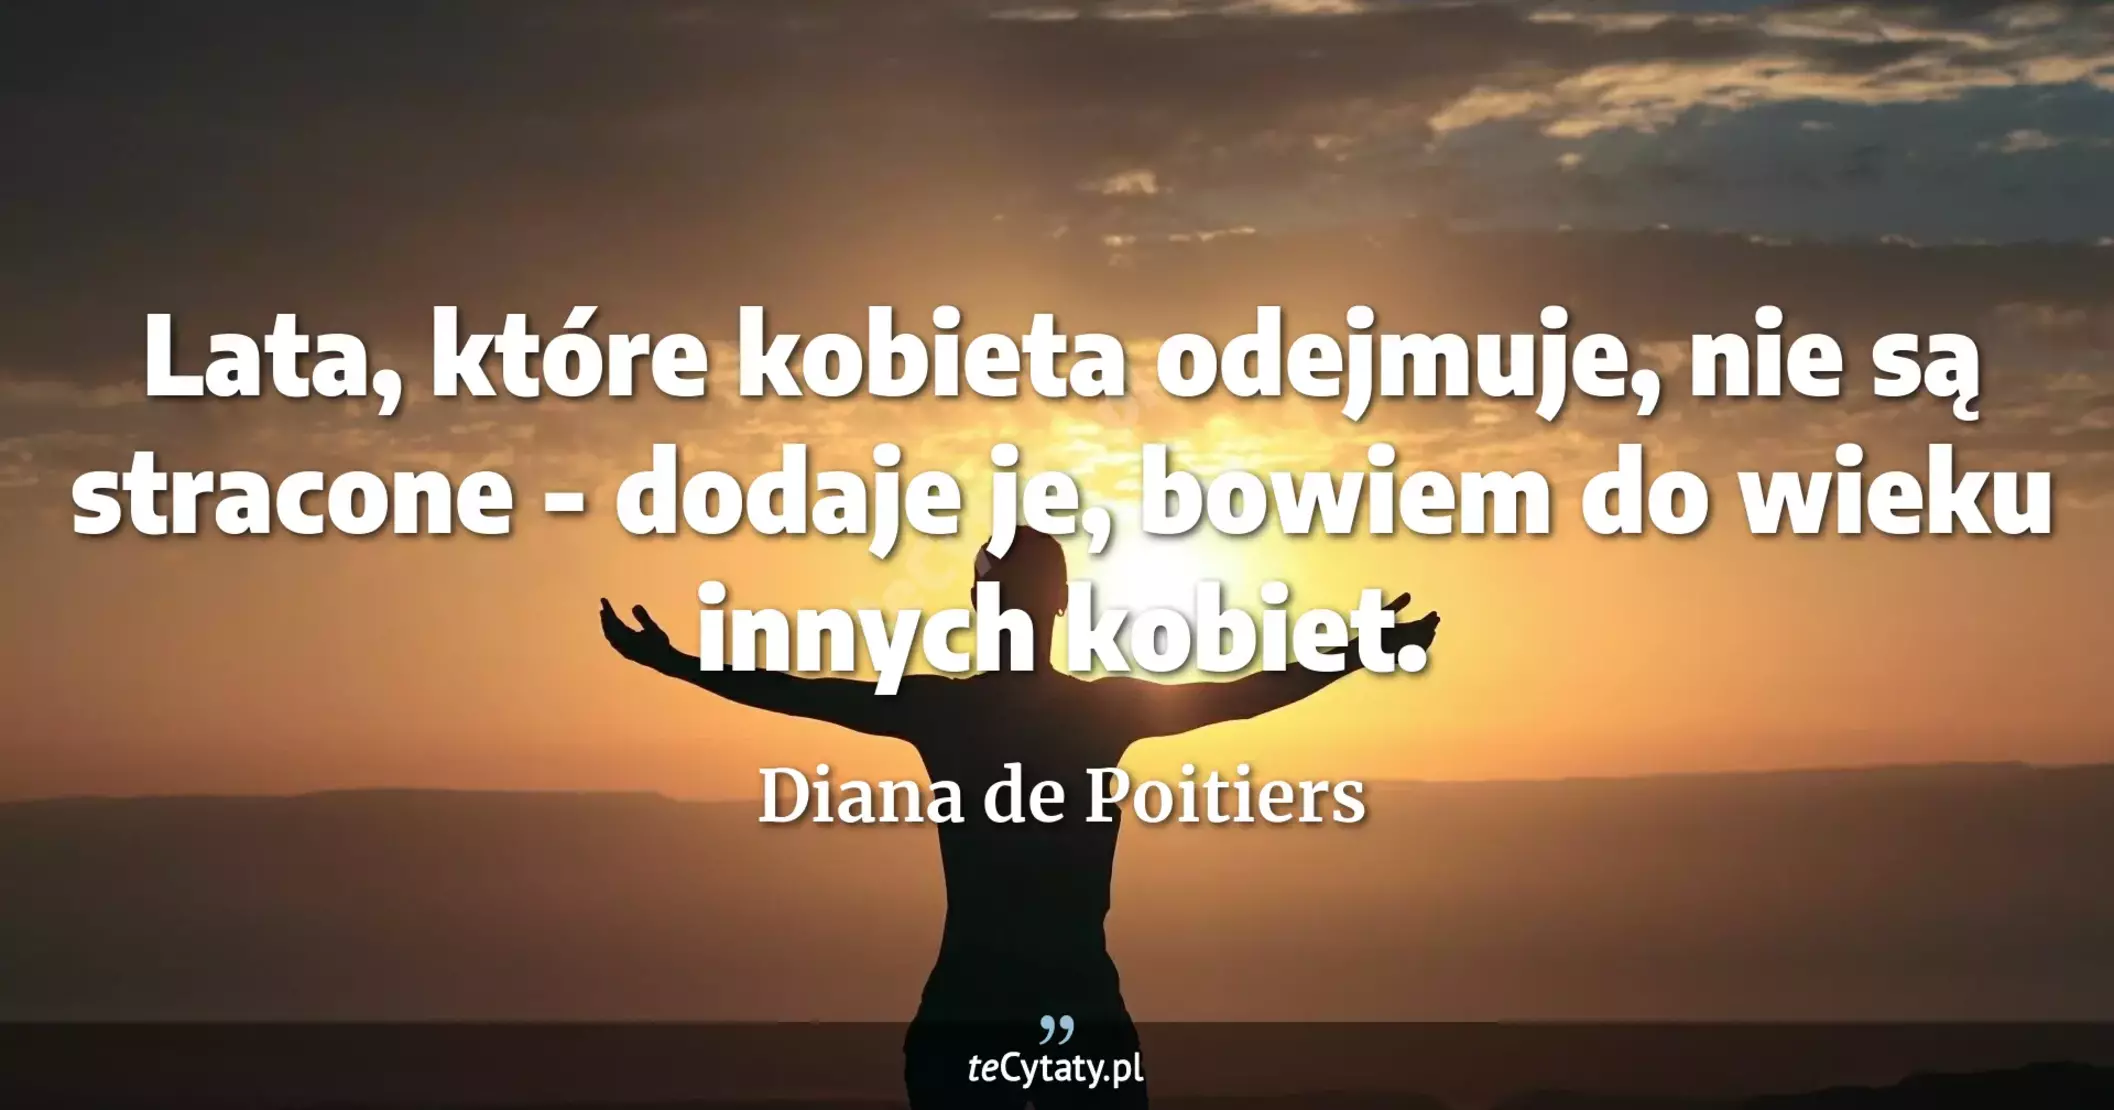 Lata, które kobieta odejmuje, nie są stracone - dodaje je, bowiem do wieku innych kobiet. - Diana de Poitiers